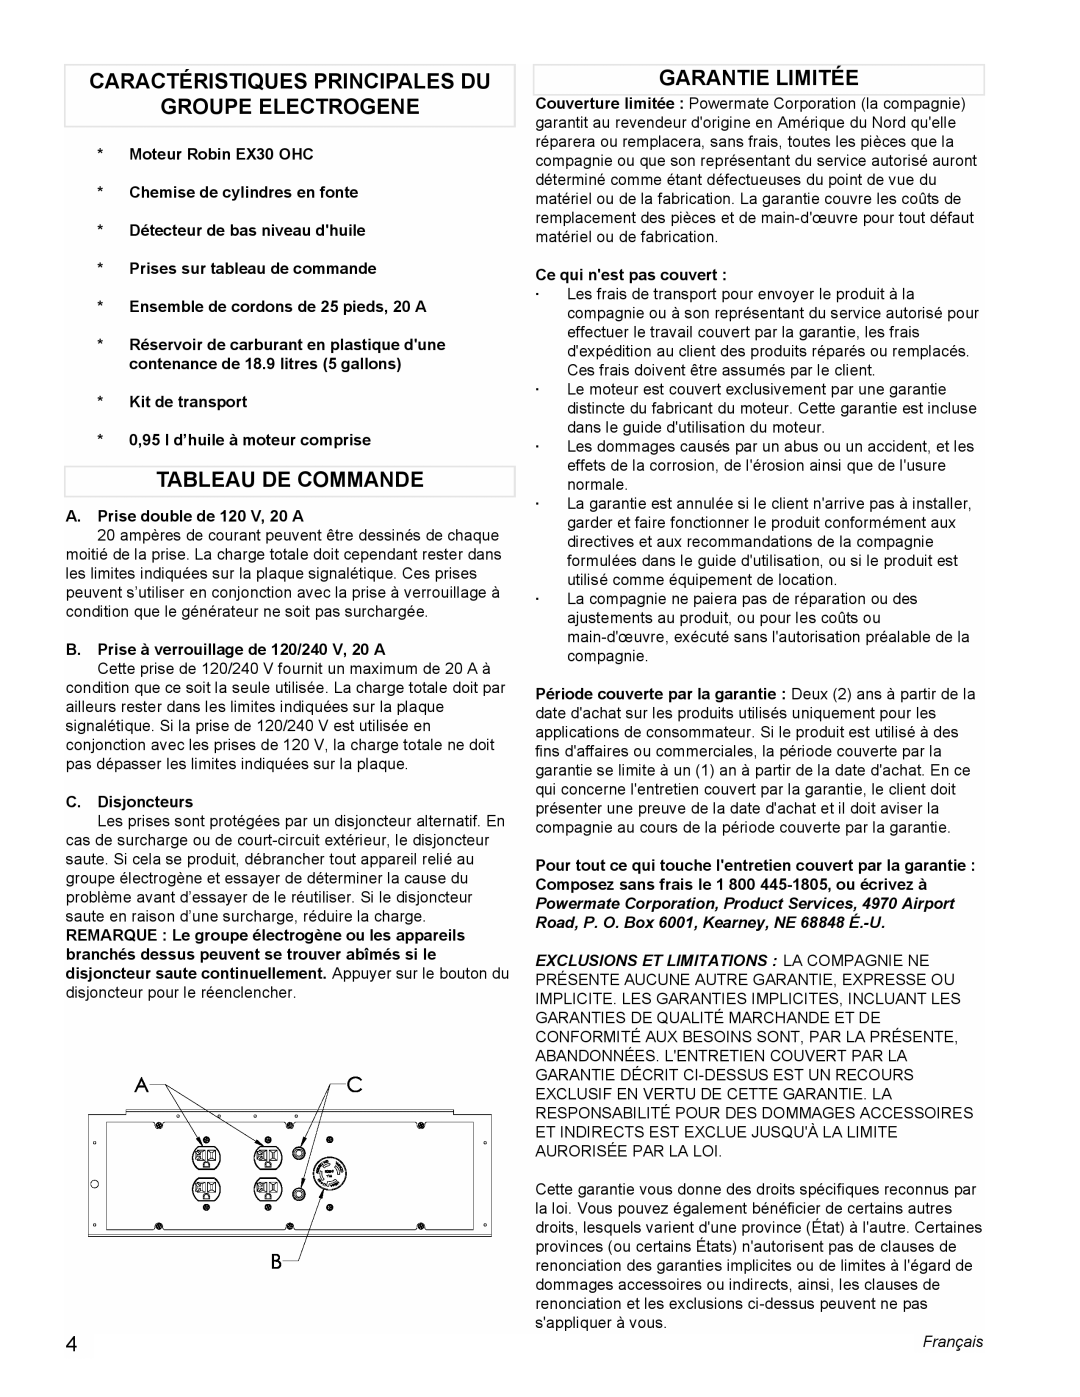 Powermate PM0435000 Caractéristiques Principales Du, Groupe Electrogene, Tableau De Commande, Garantie Limitée, Français 